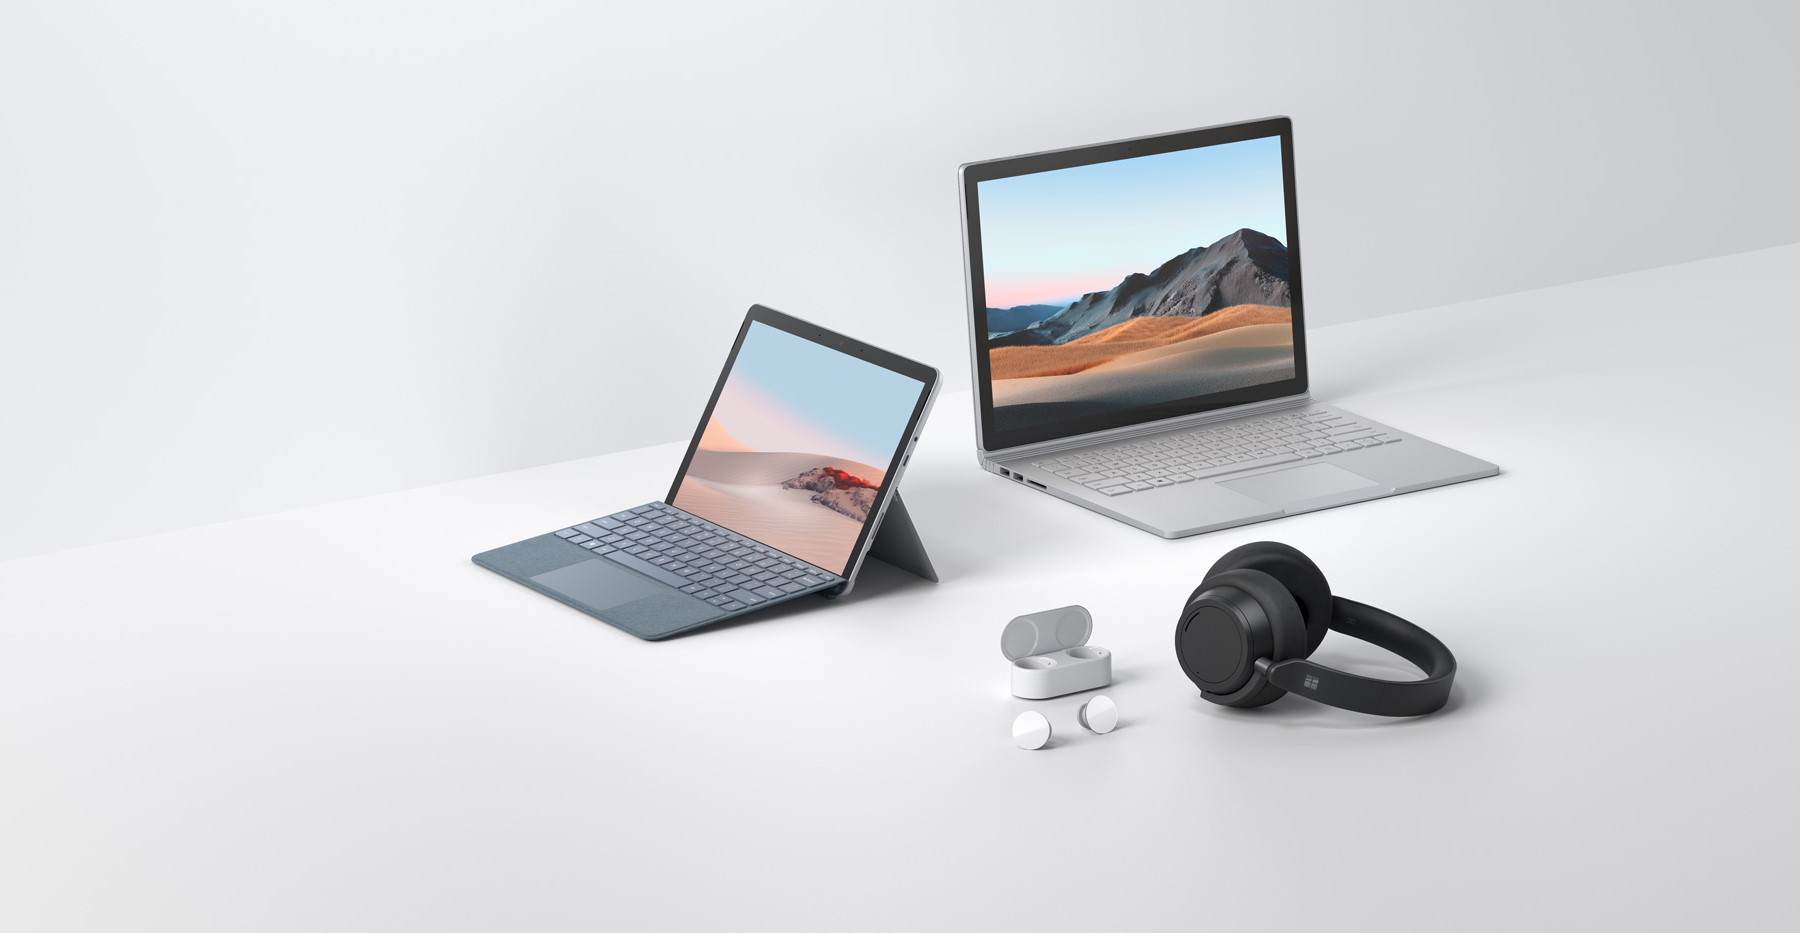 Microsoft a annoncé les Surface Book 3 et Surface Go 2, ainsi qu’un casque et des écouteurs sans fil © Microsoft